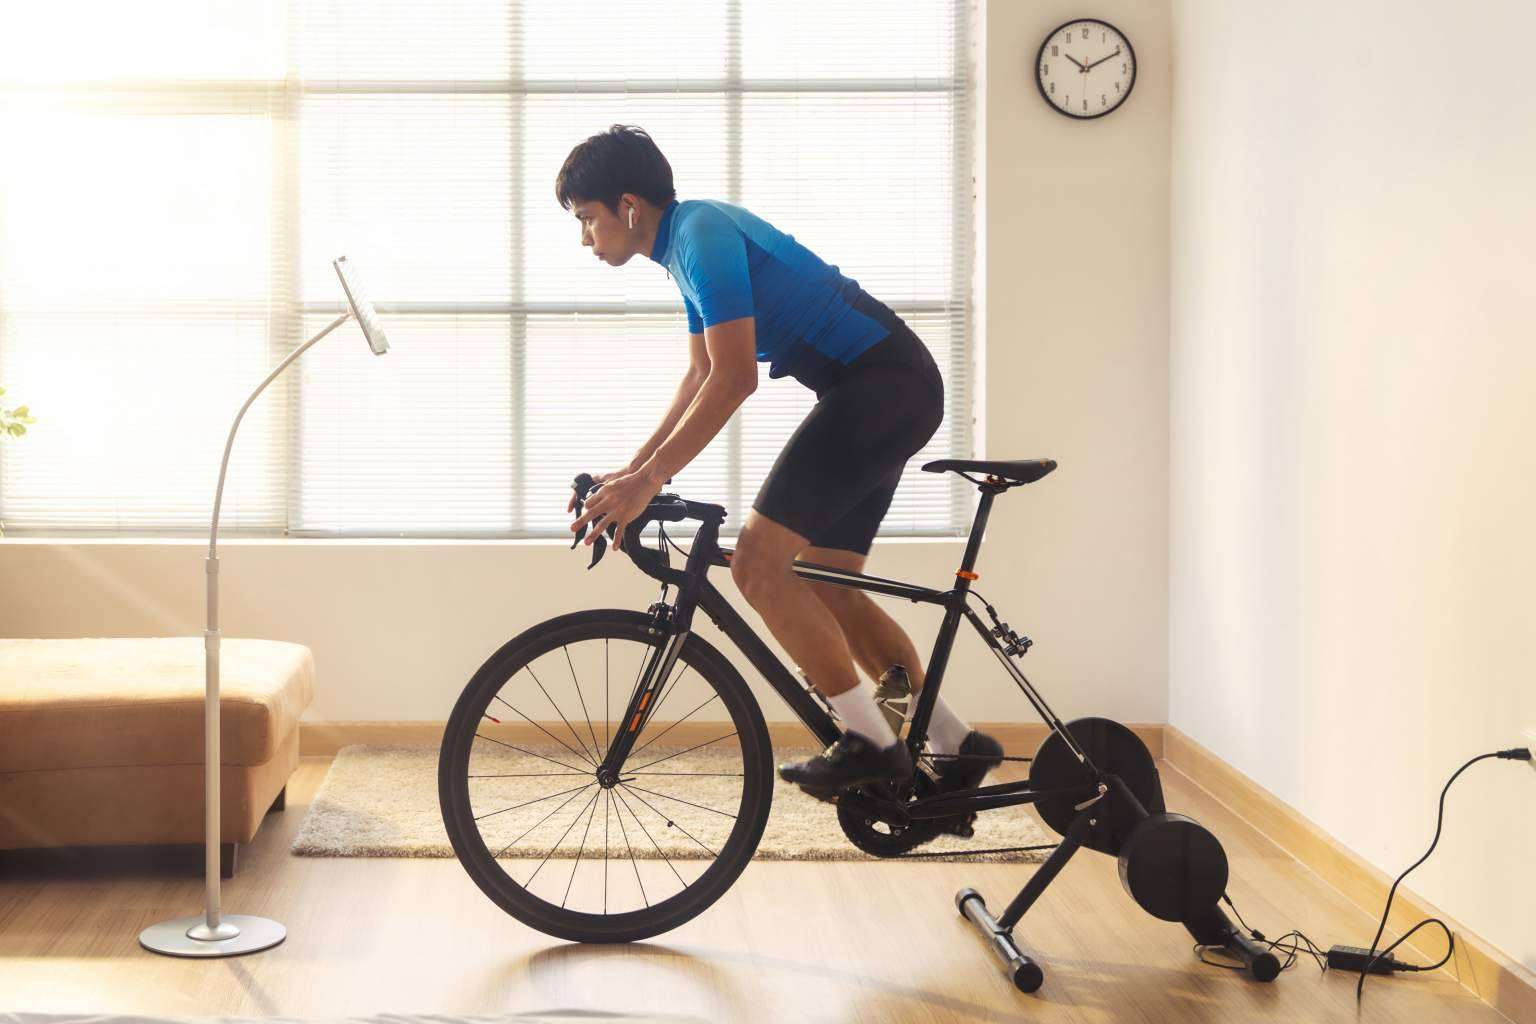 Conocer las ventajas de entrenar con una bici de spinning en casa, con los consejos de Top Entreno